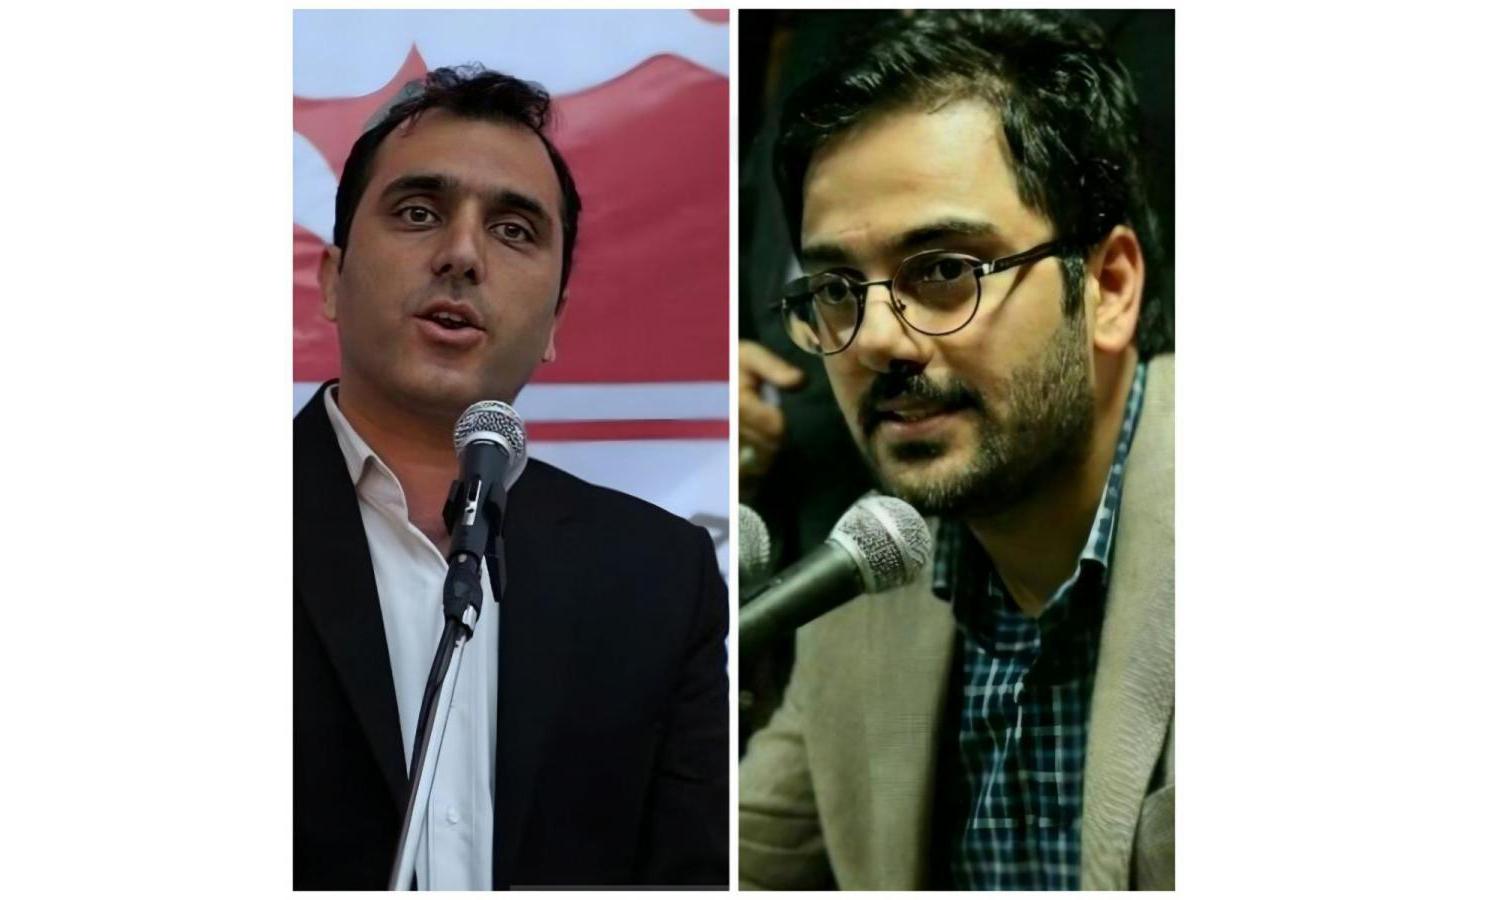 روسای ستاد انتخاباتی جبهه اصلاحات و مسعود پزشکیان در گیلان معرفی شدند